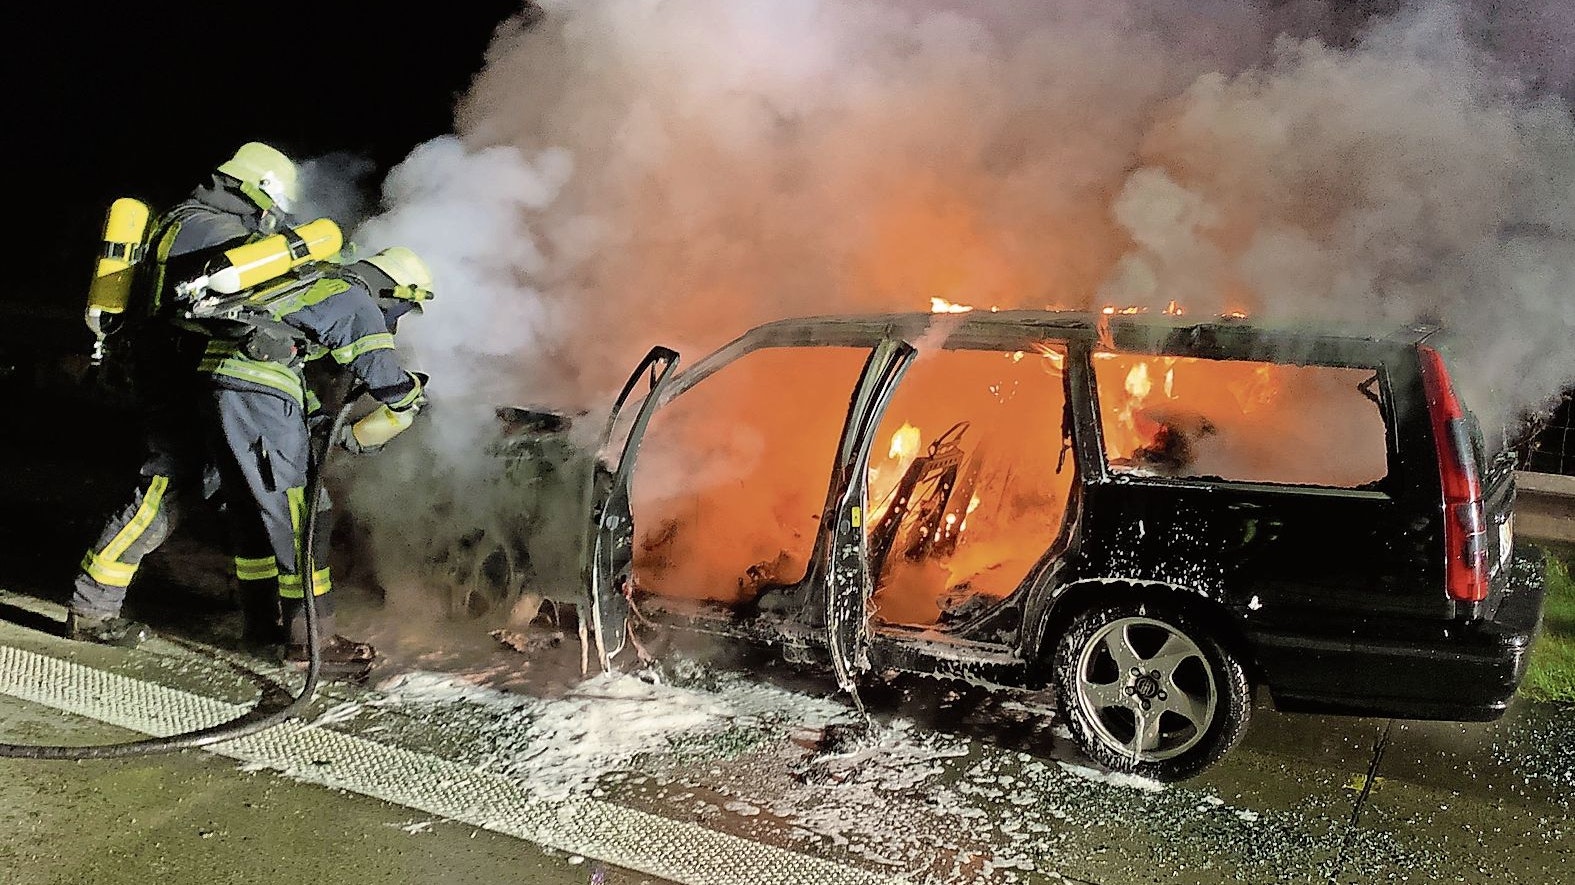 Fahrzeugbrand: Auch die Autobahnen 1 und 29 gehören zum Einsatzgebiet der Emsteker Feuerwehr. Brennt dort ein Auto, werden die Kameraden alarmiert. Foto: FFW Emstek